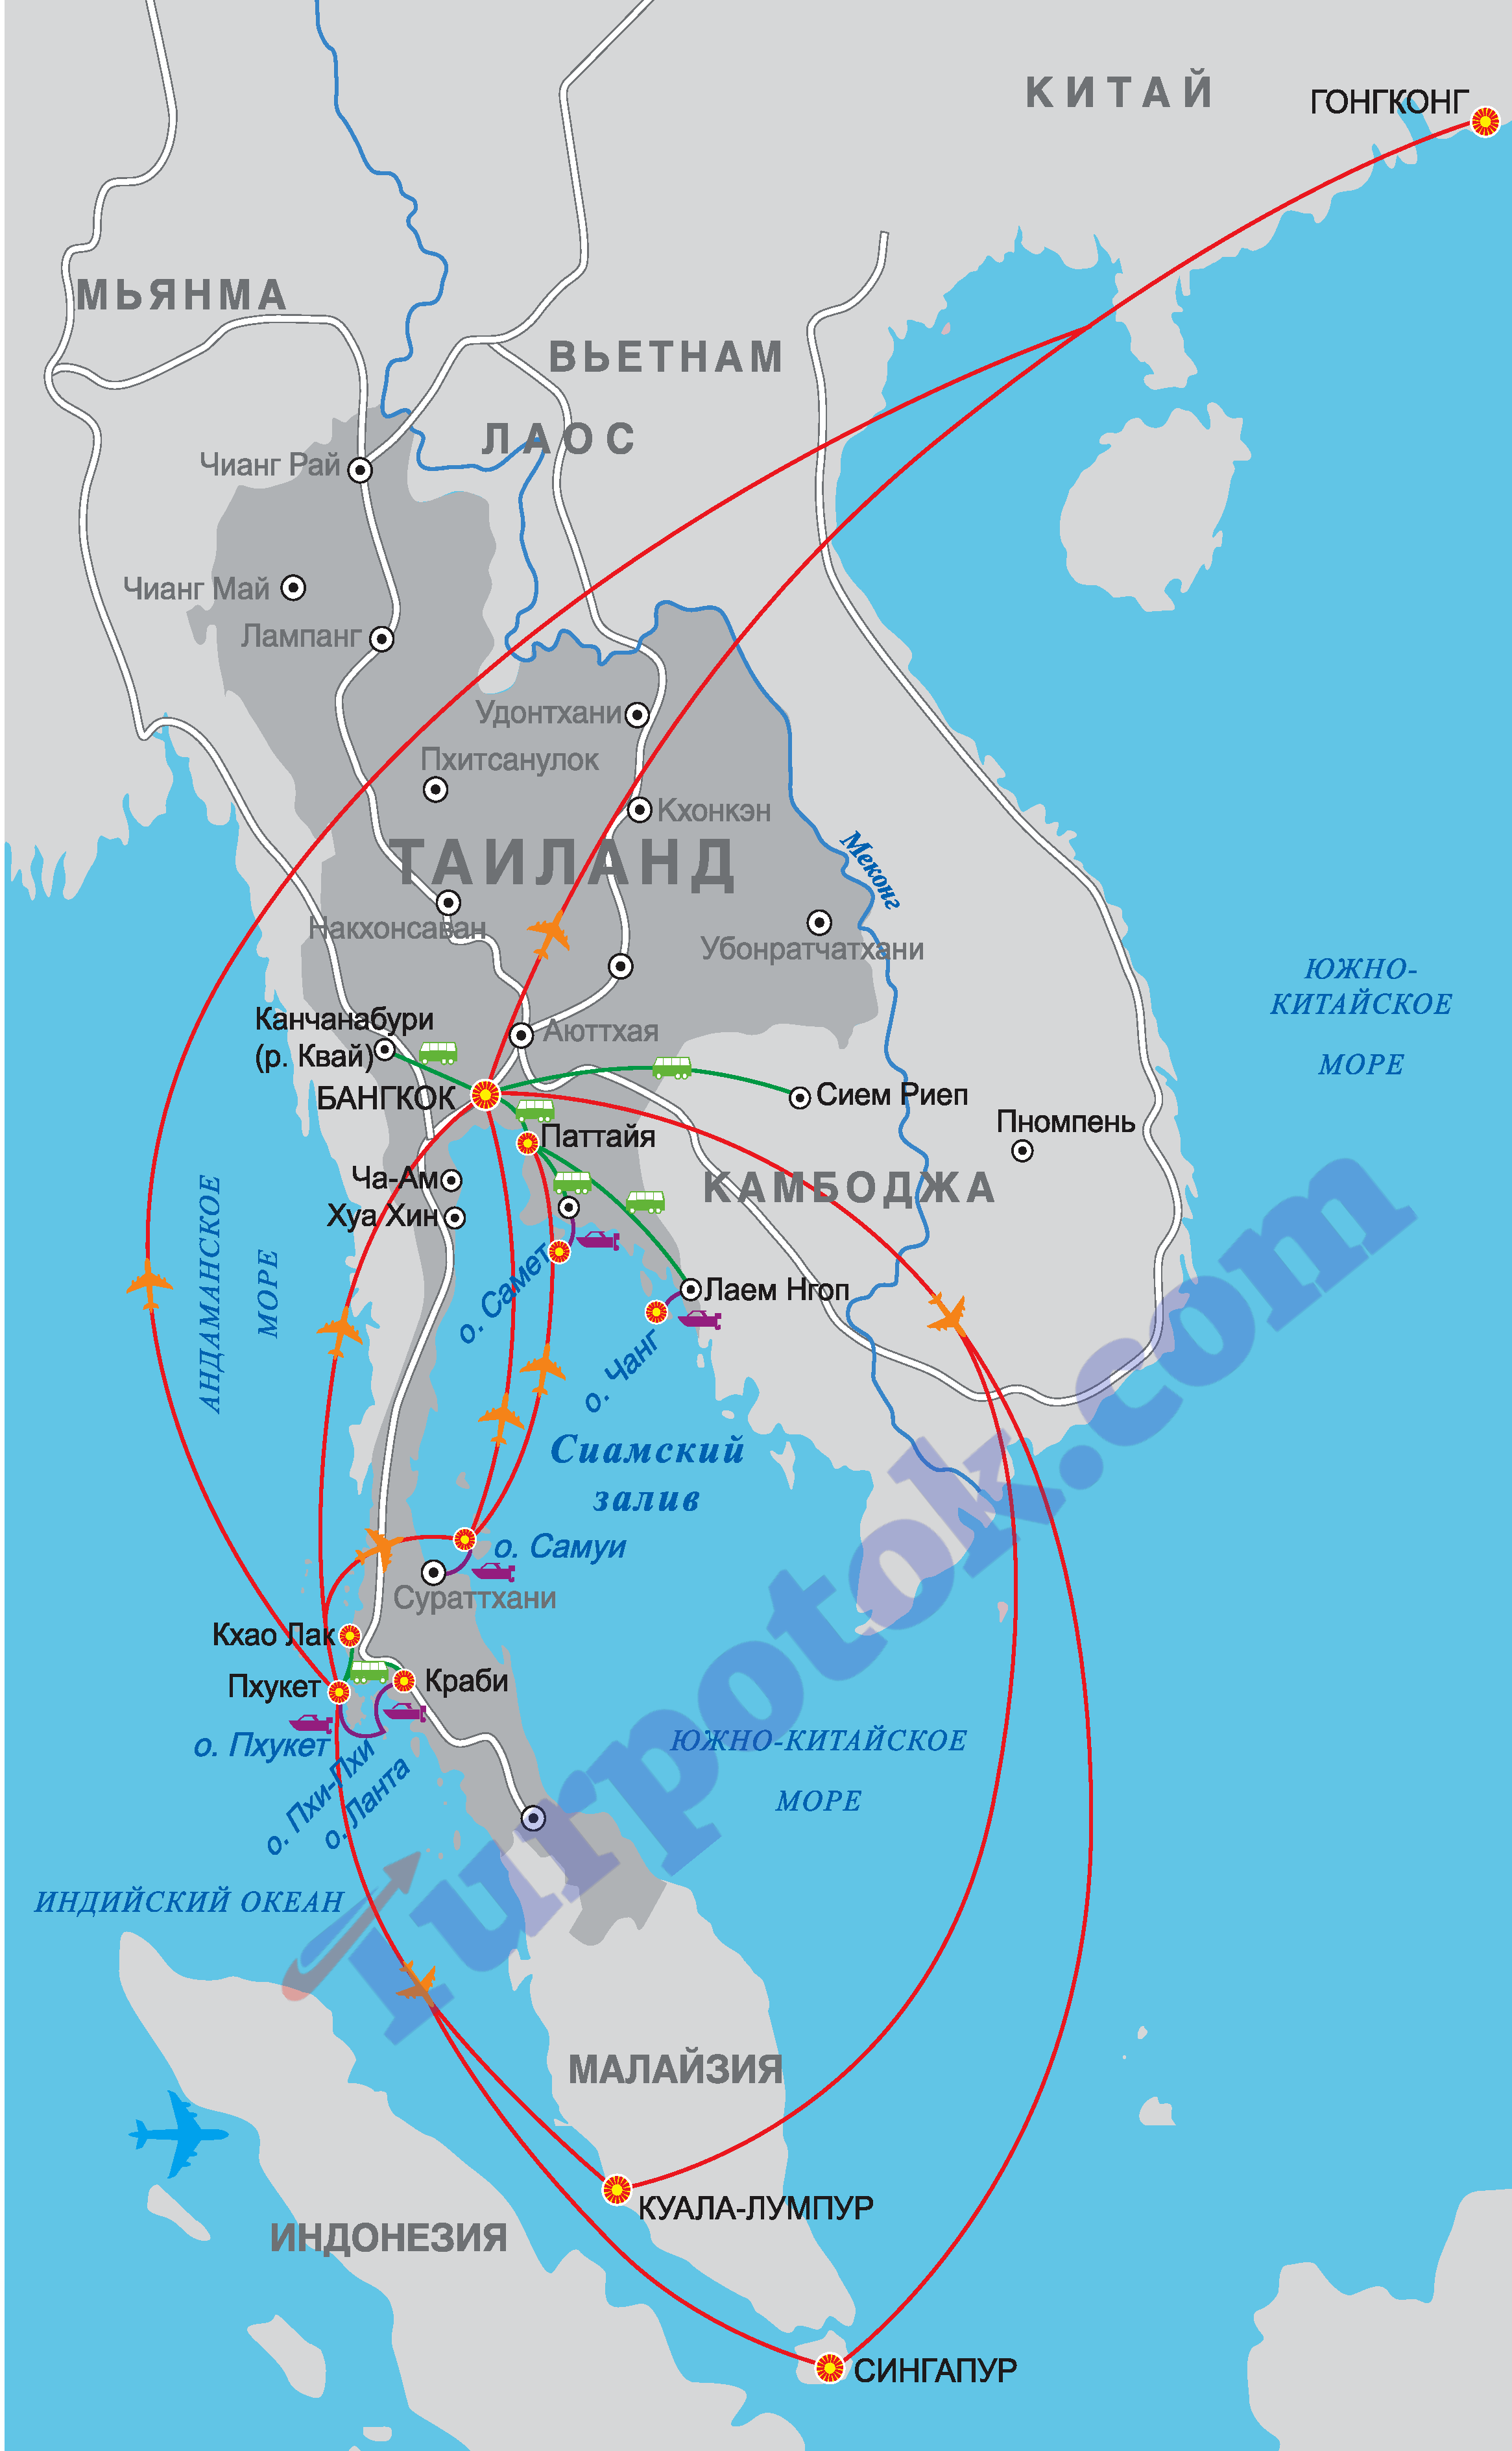 Бангкок, Паттайя, Пхукет, Самуи, Ко Чанг, Хуа Хин, Краби на карта Таиланда